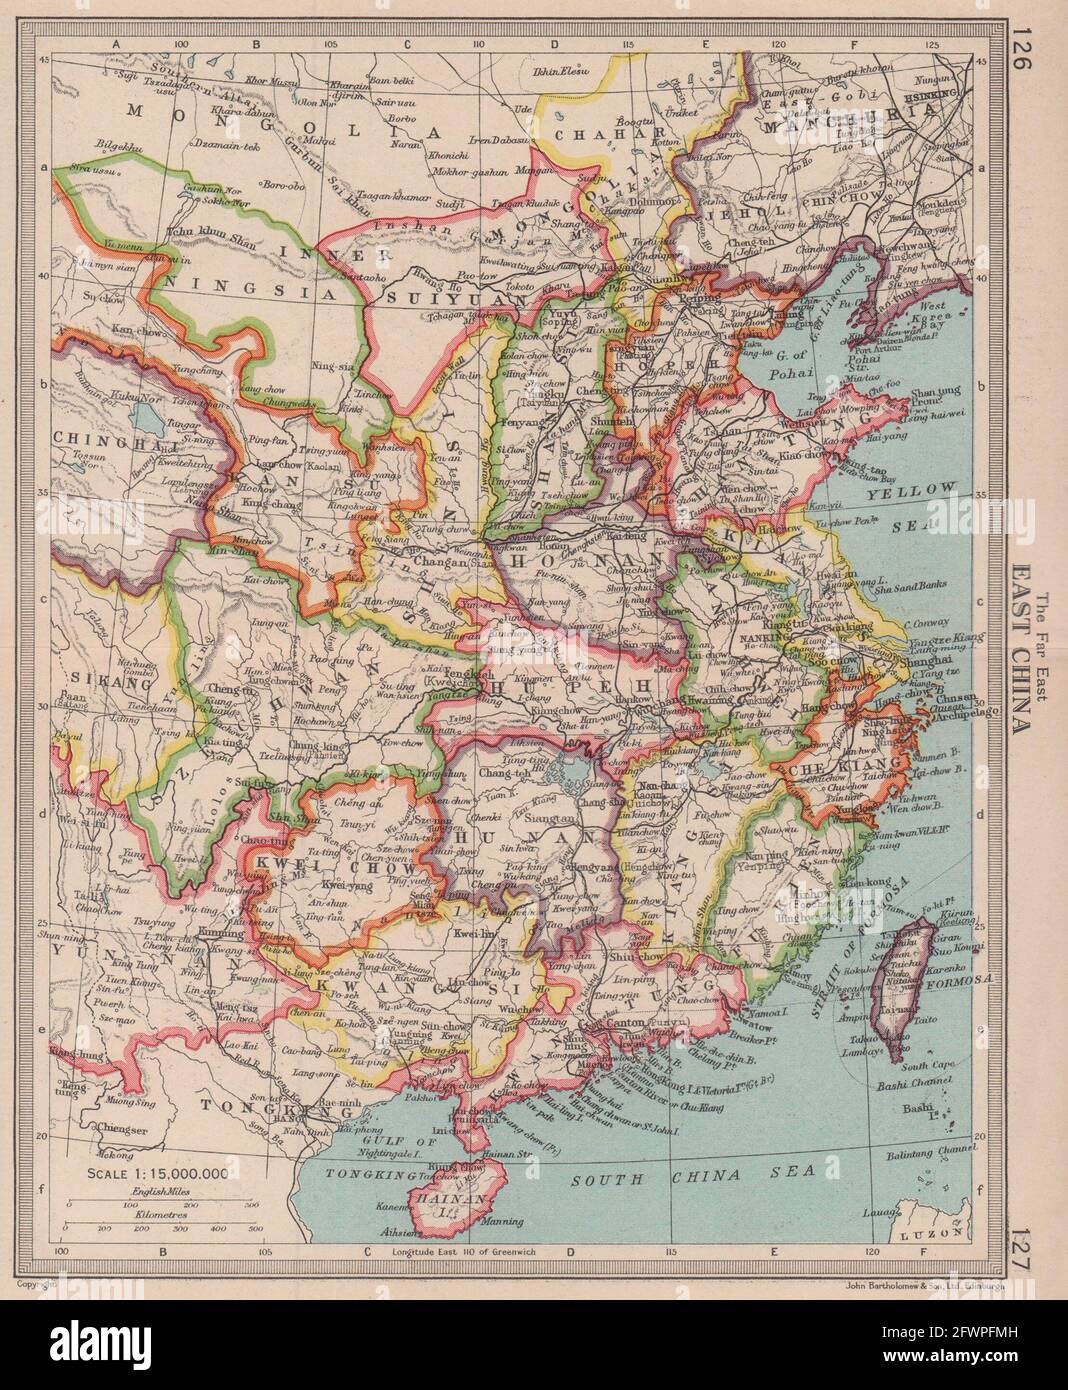 China. BARTHOLOMEW 1949 old vintage map plan chart Stock Photo